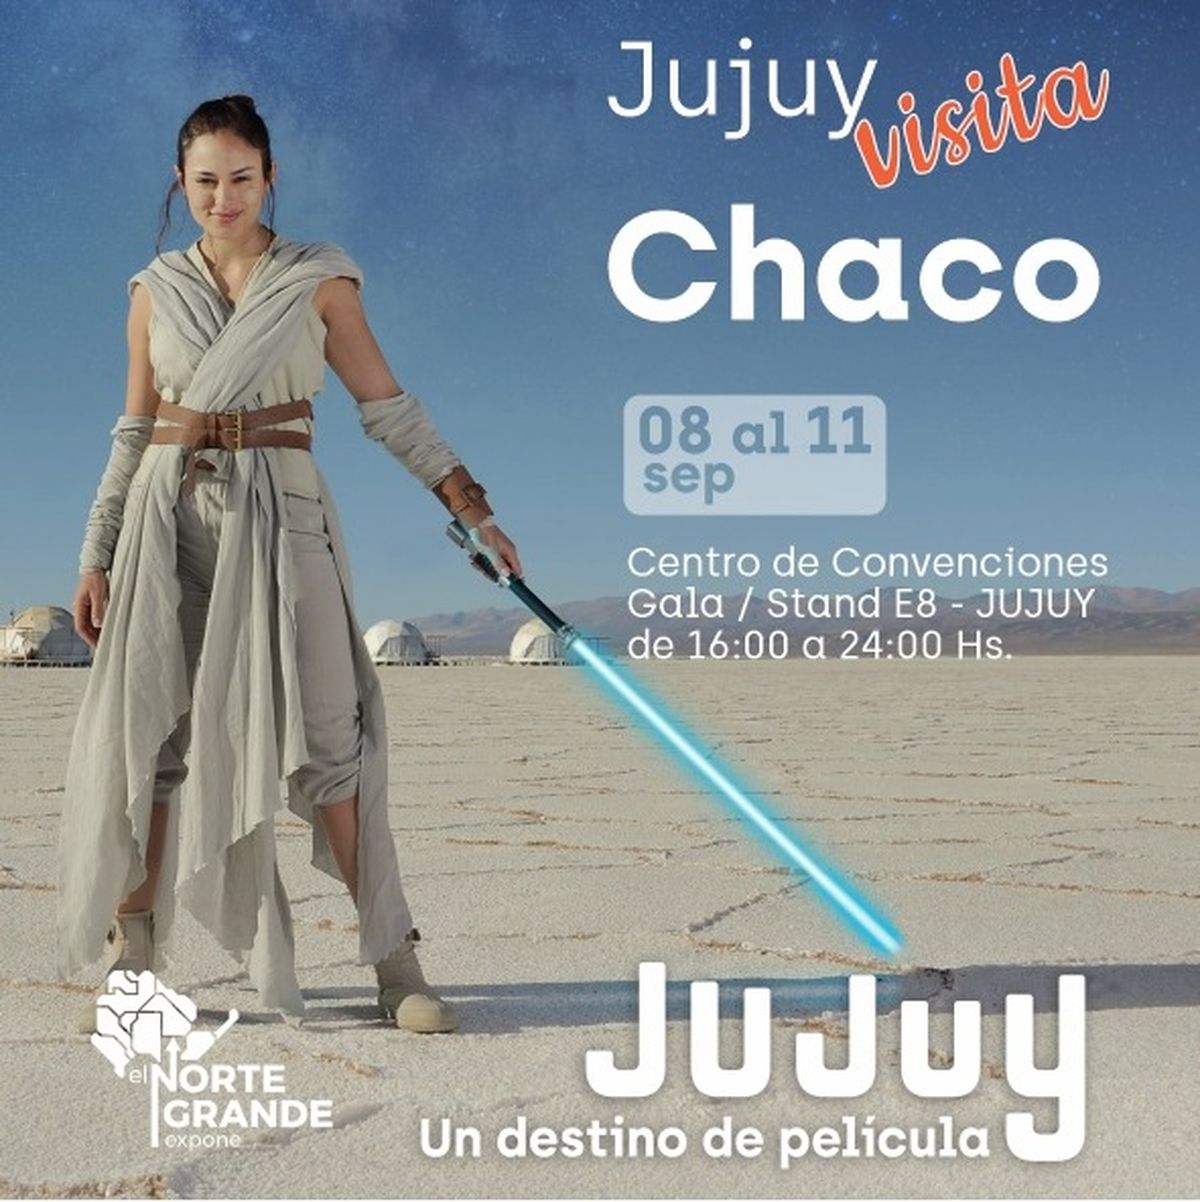 Jujuy muestra su cultura y turismo en el Chaco